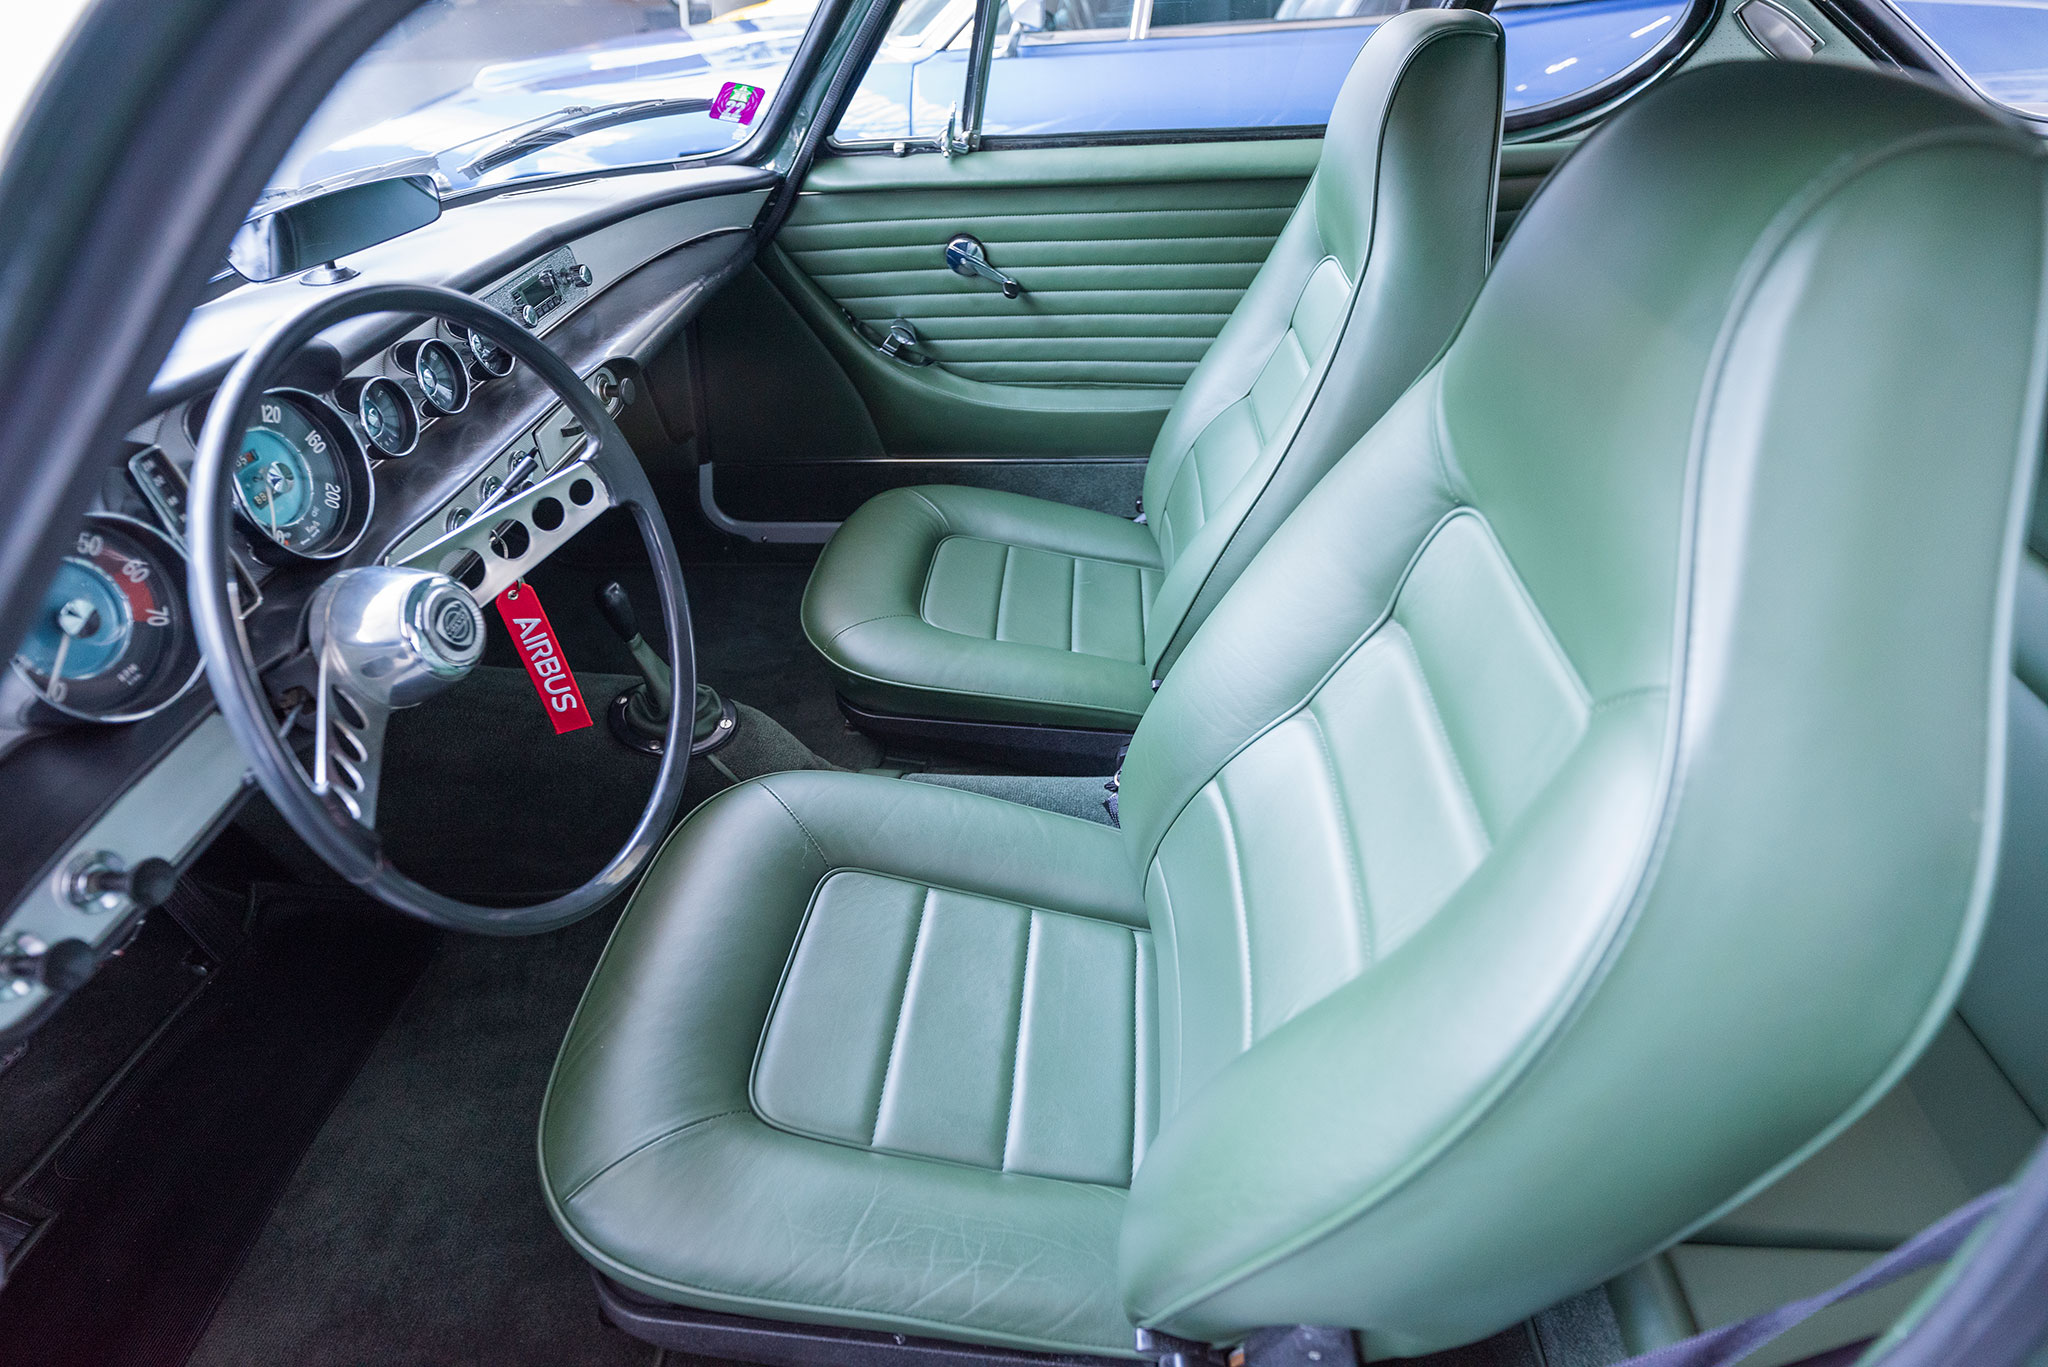 1963 Volvo P1800 nouveaux sièges avec appuie-tête intégrés.